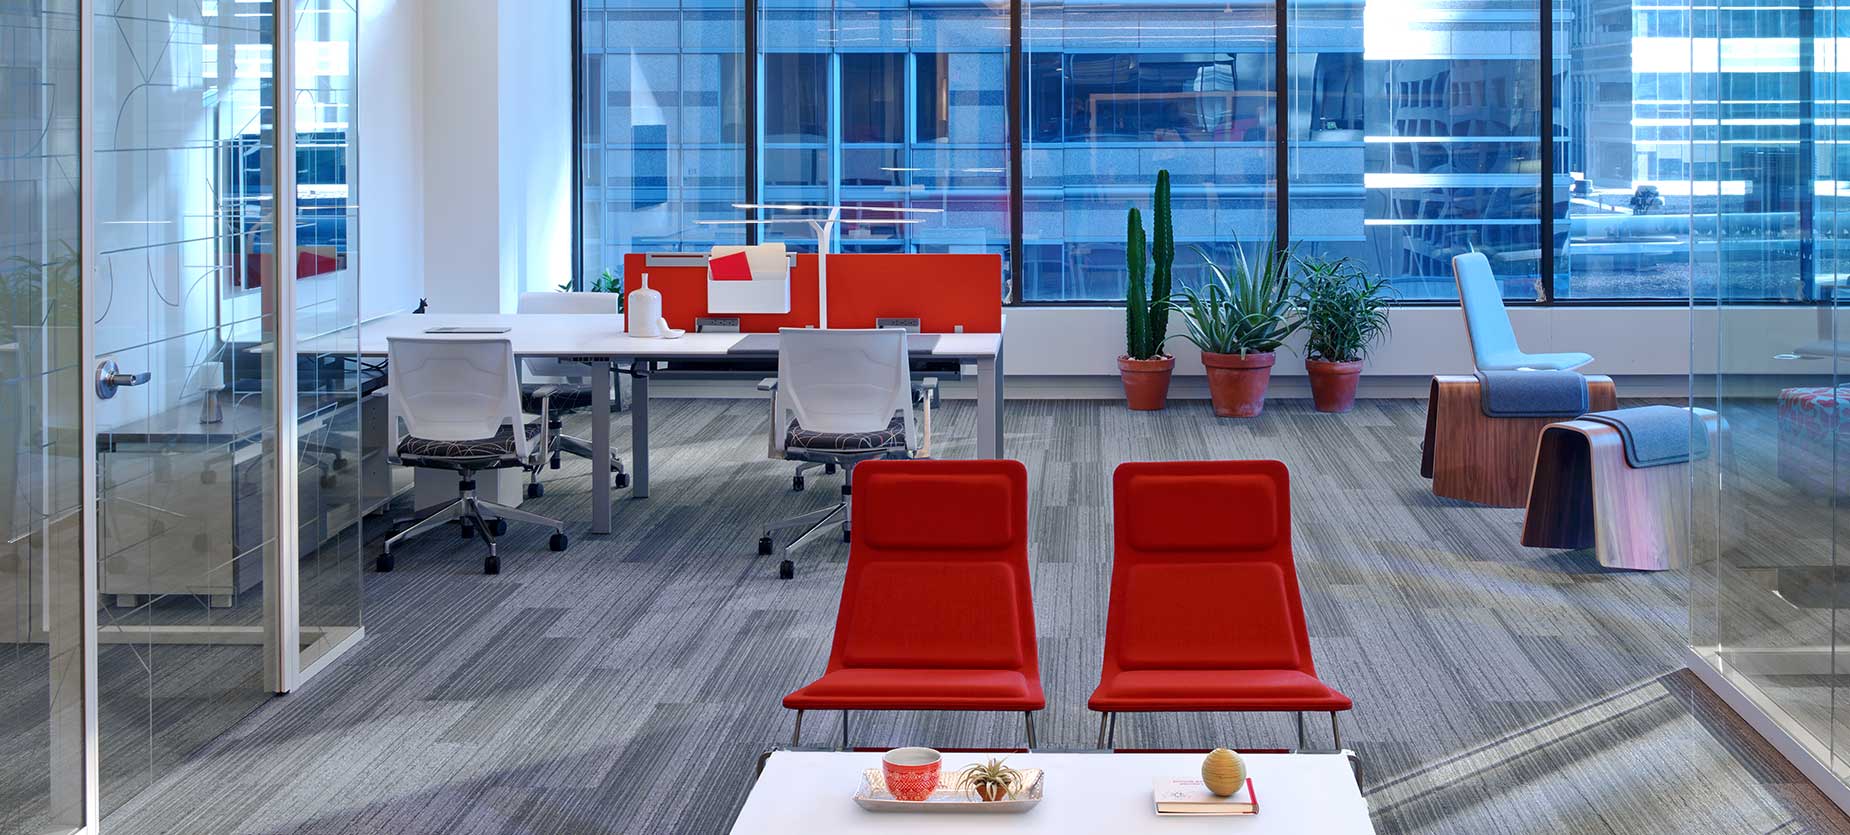 海沃氏精奢系列的Low Pad休闲椅可以作为休闲座椅，展厅空间的最后布置了Reside独立办公桌、办公用具和Very会议椅。